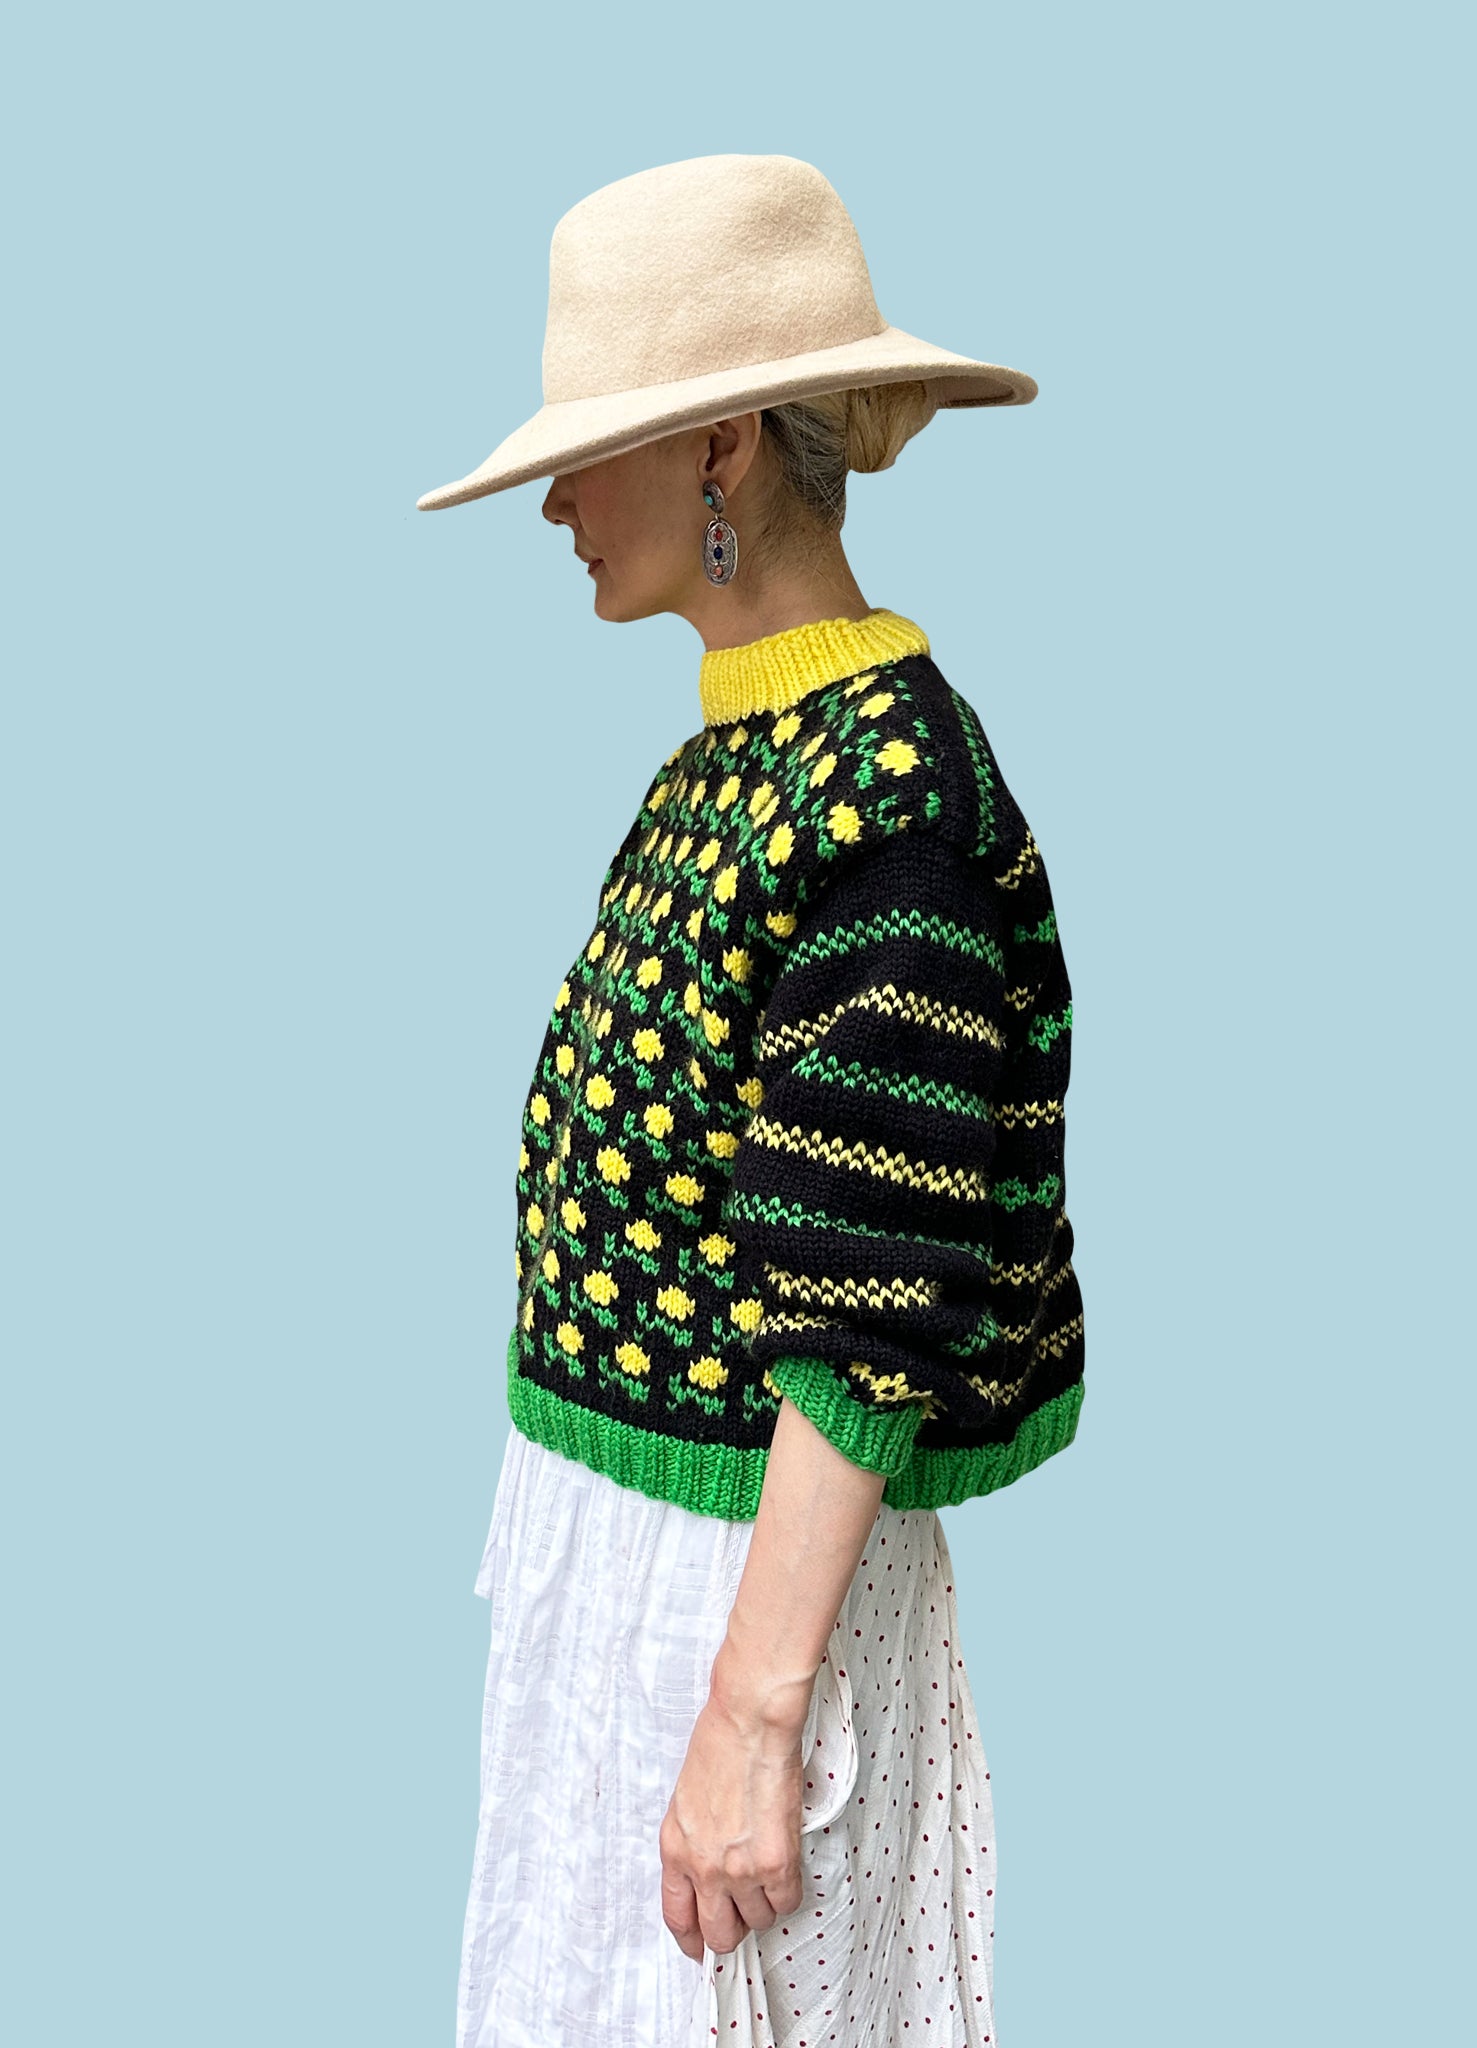 Flower Garden Sweater PATTERN- Dream (Merino Worsted)